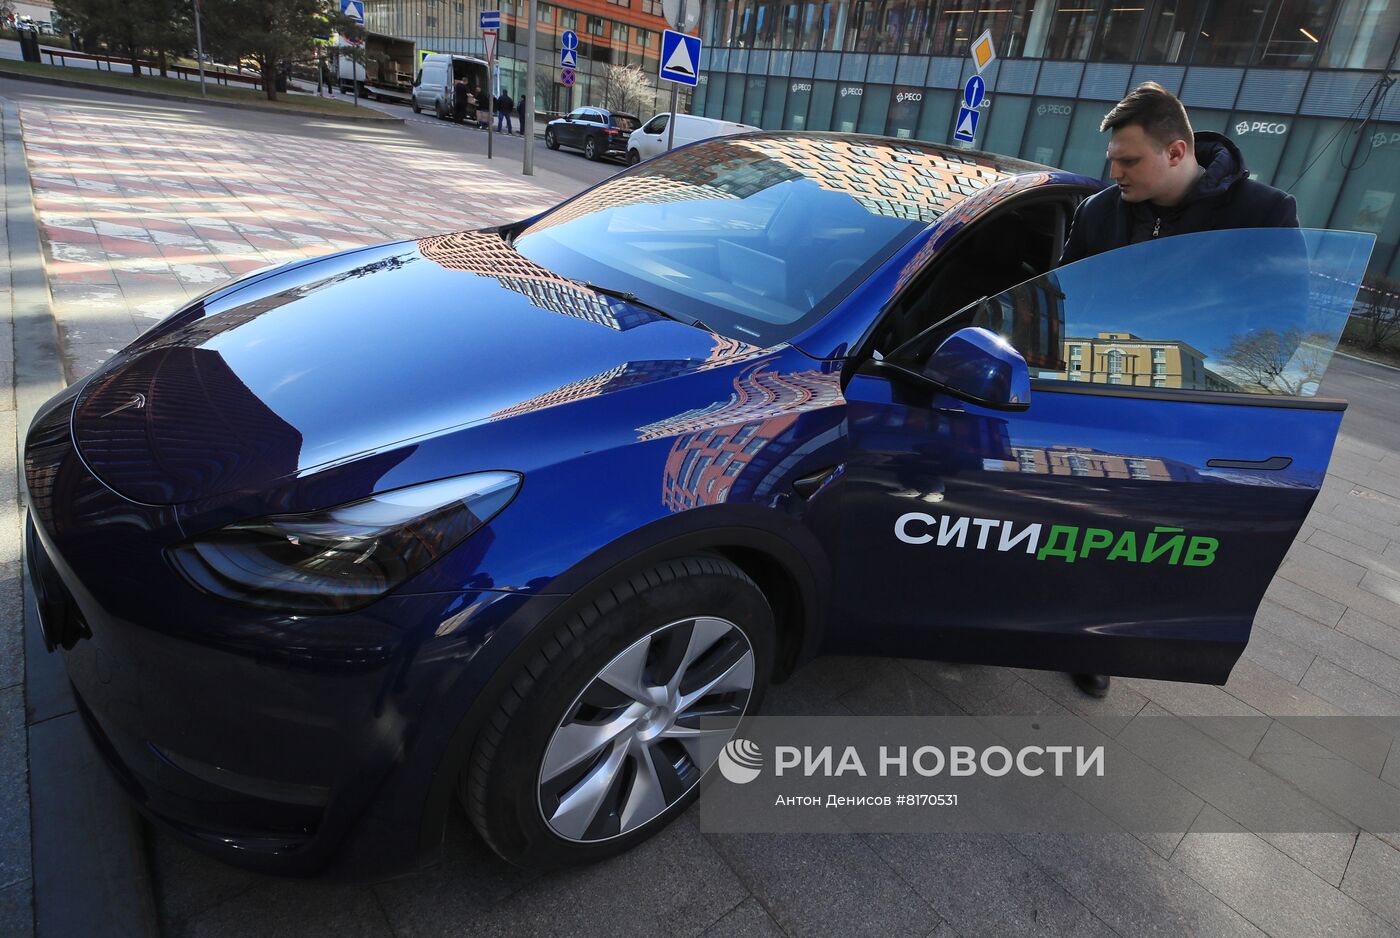 Автопарк каршеринга "Ситидрайв" пополнился электрокаром Tesla Model Y